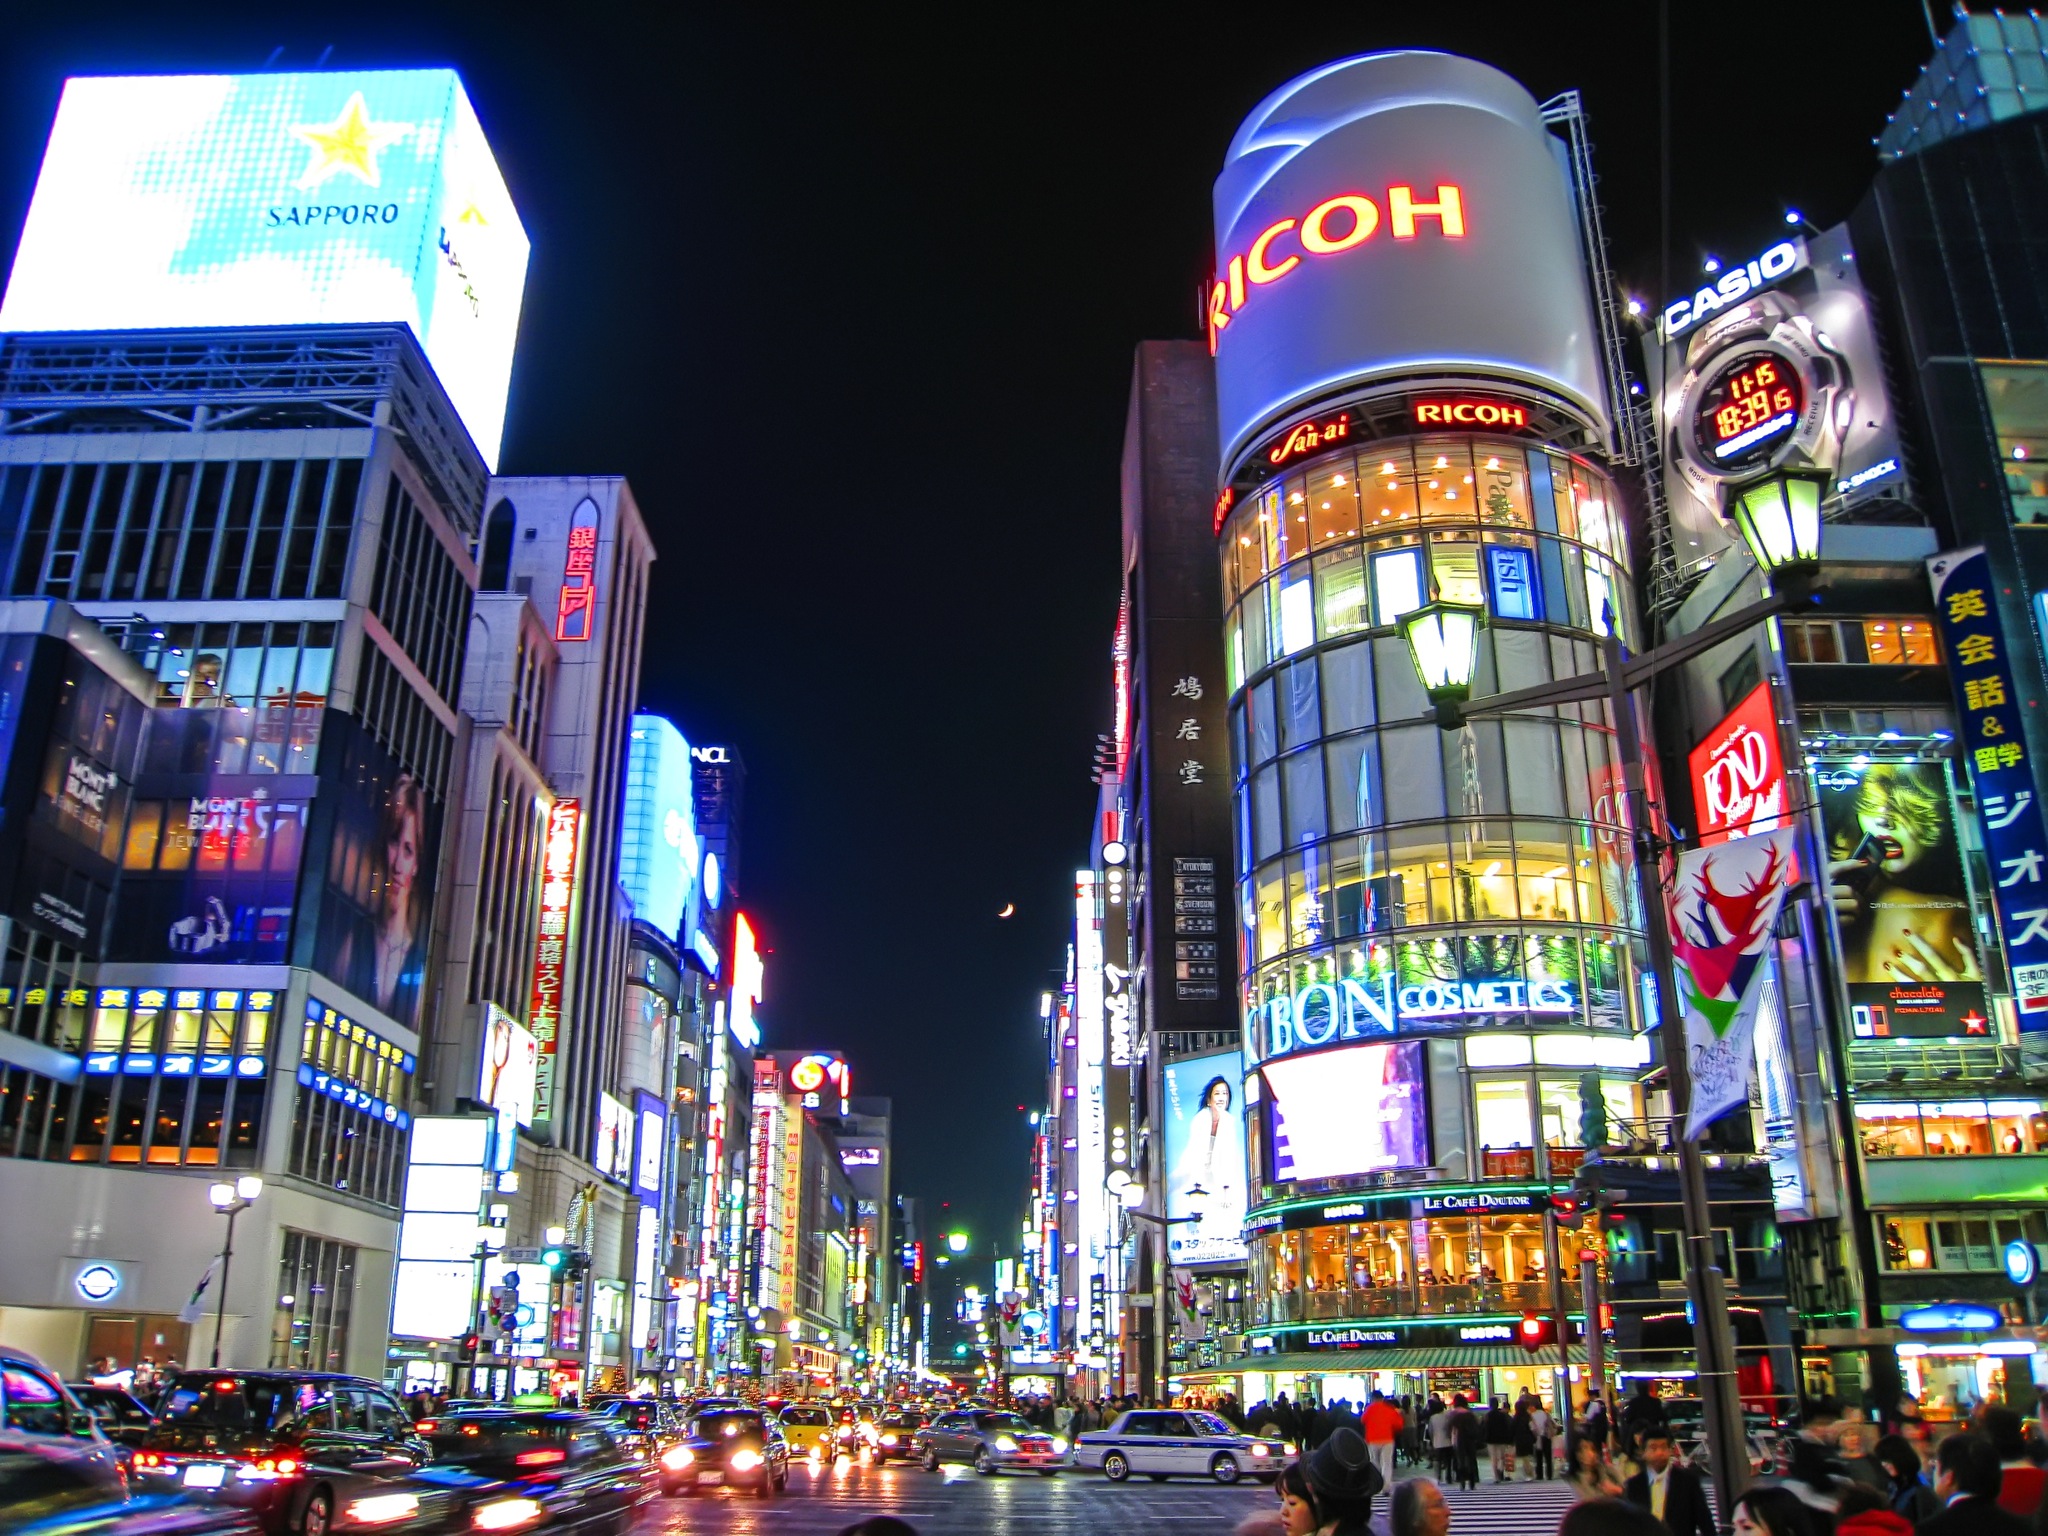 Du lịch Tokyo, Nhật Bản: Top 10 thắng cảnh du lịch thú vị